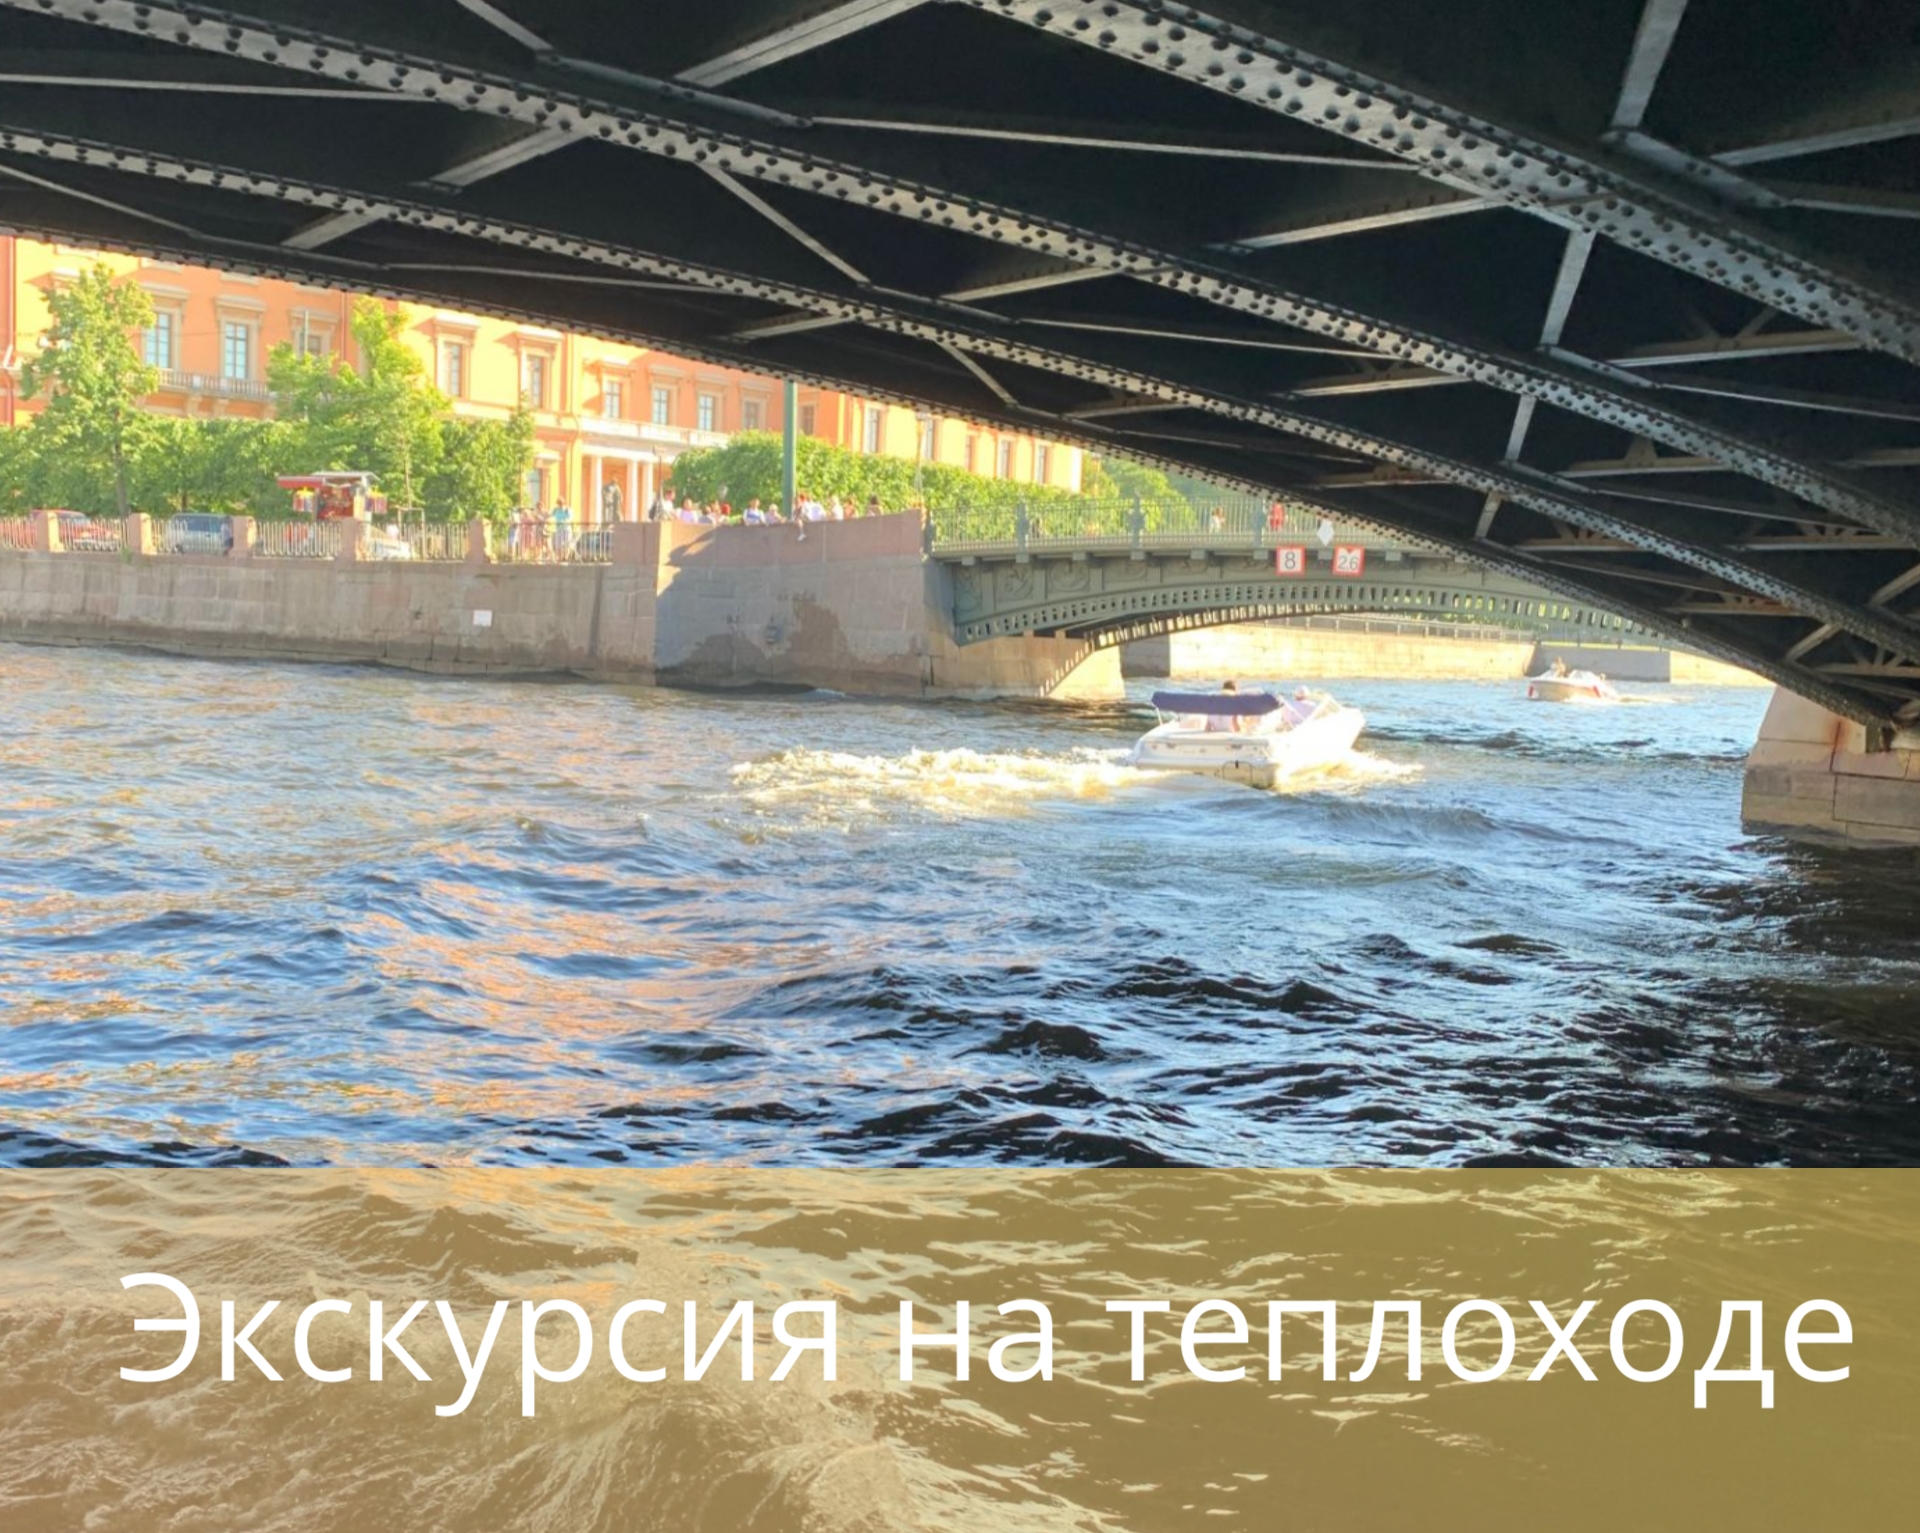 Водная экскурсия "Золотой треугольник по каналу Грибоедова" в любой день недели